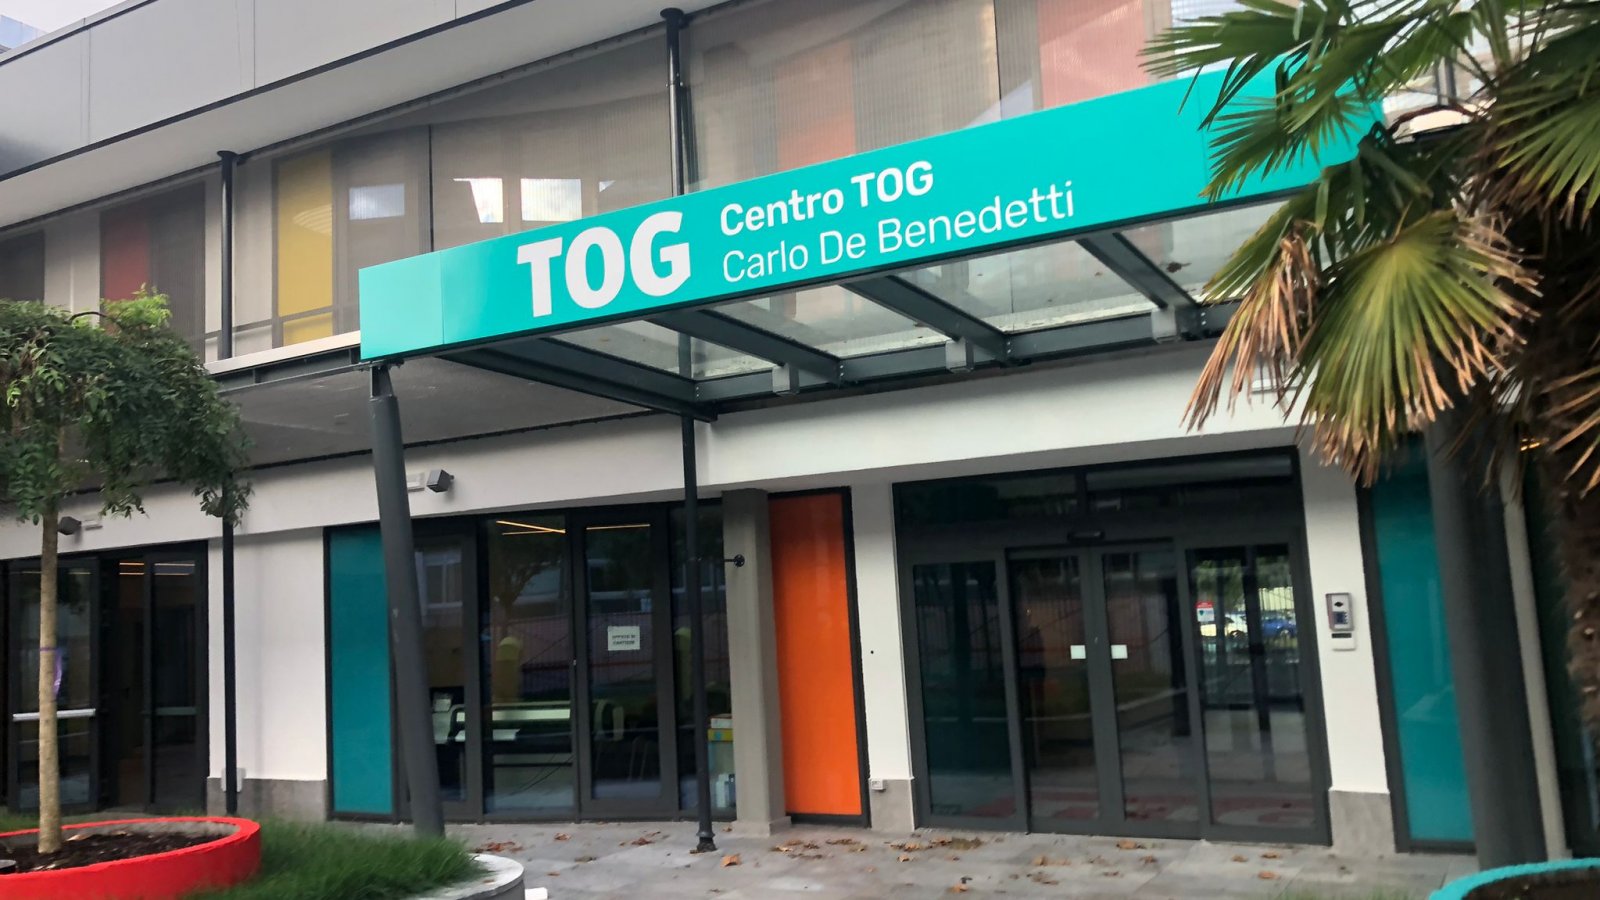 Se acerca la inauguración del centro TOG Carlo De Benedetti.